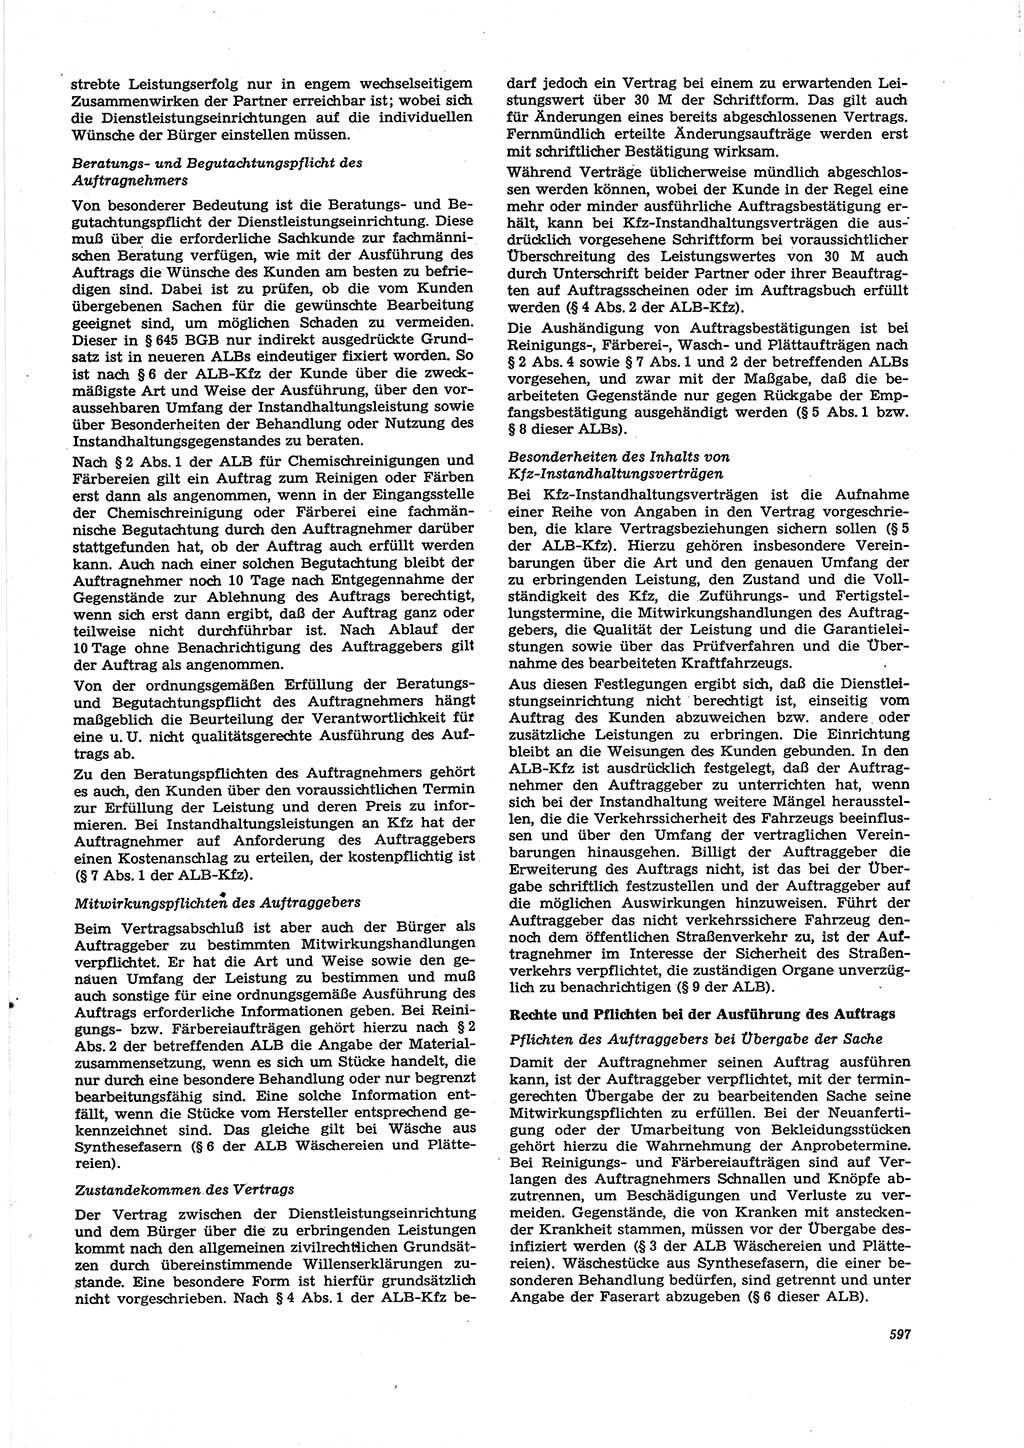 Neue Justiz (NJ), Zeitschrift für Recht und Rechtswissenschaft [Deutsche Demokratische Republik (DDR)], 27. Jahrgang 1973, Seite 597 (NJ DDR 1973, S. 597)